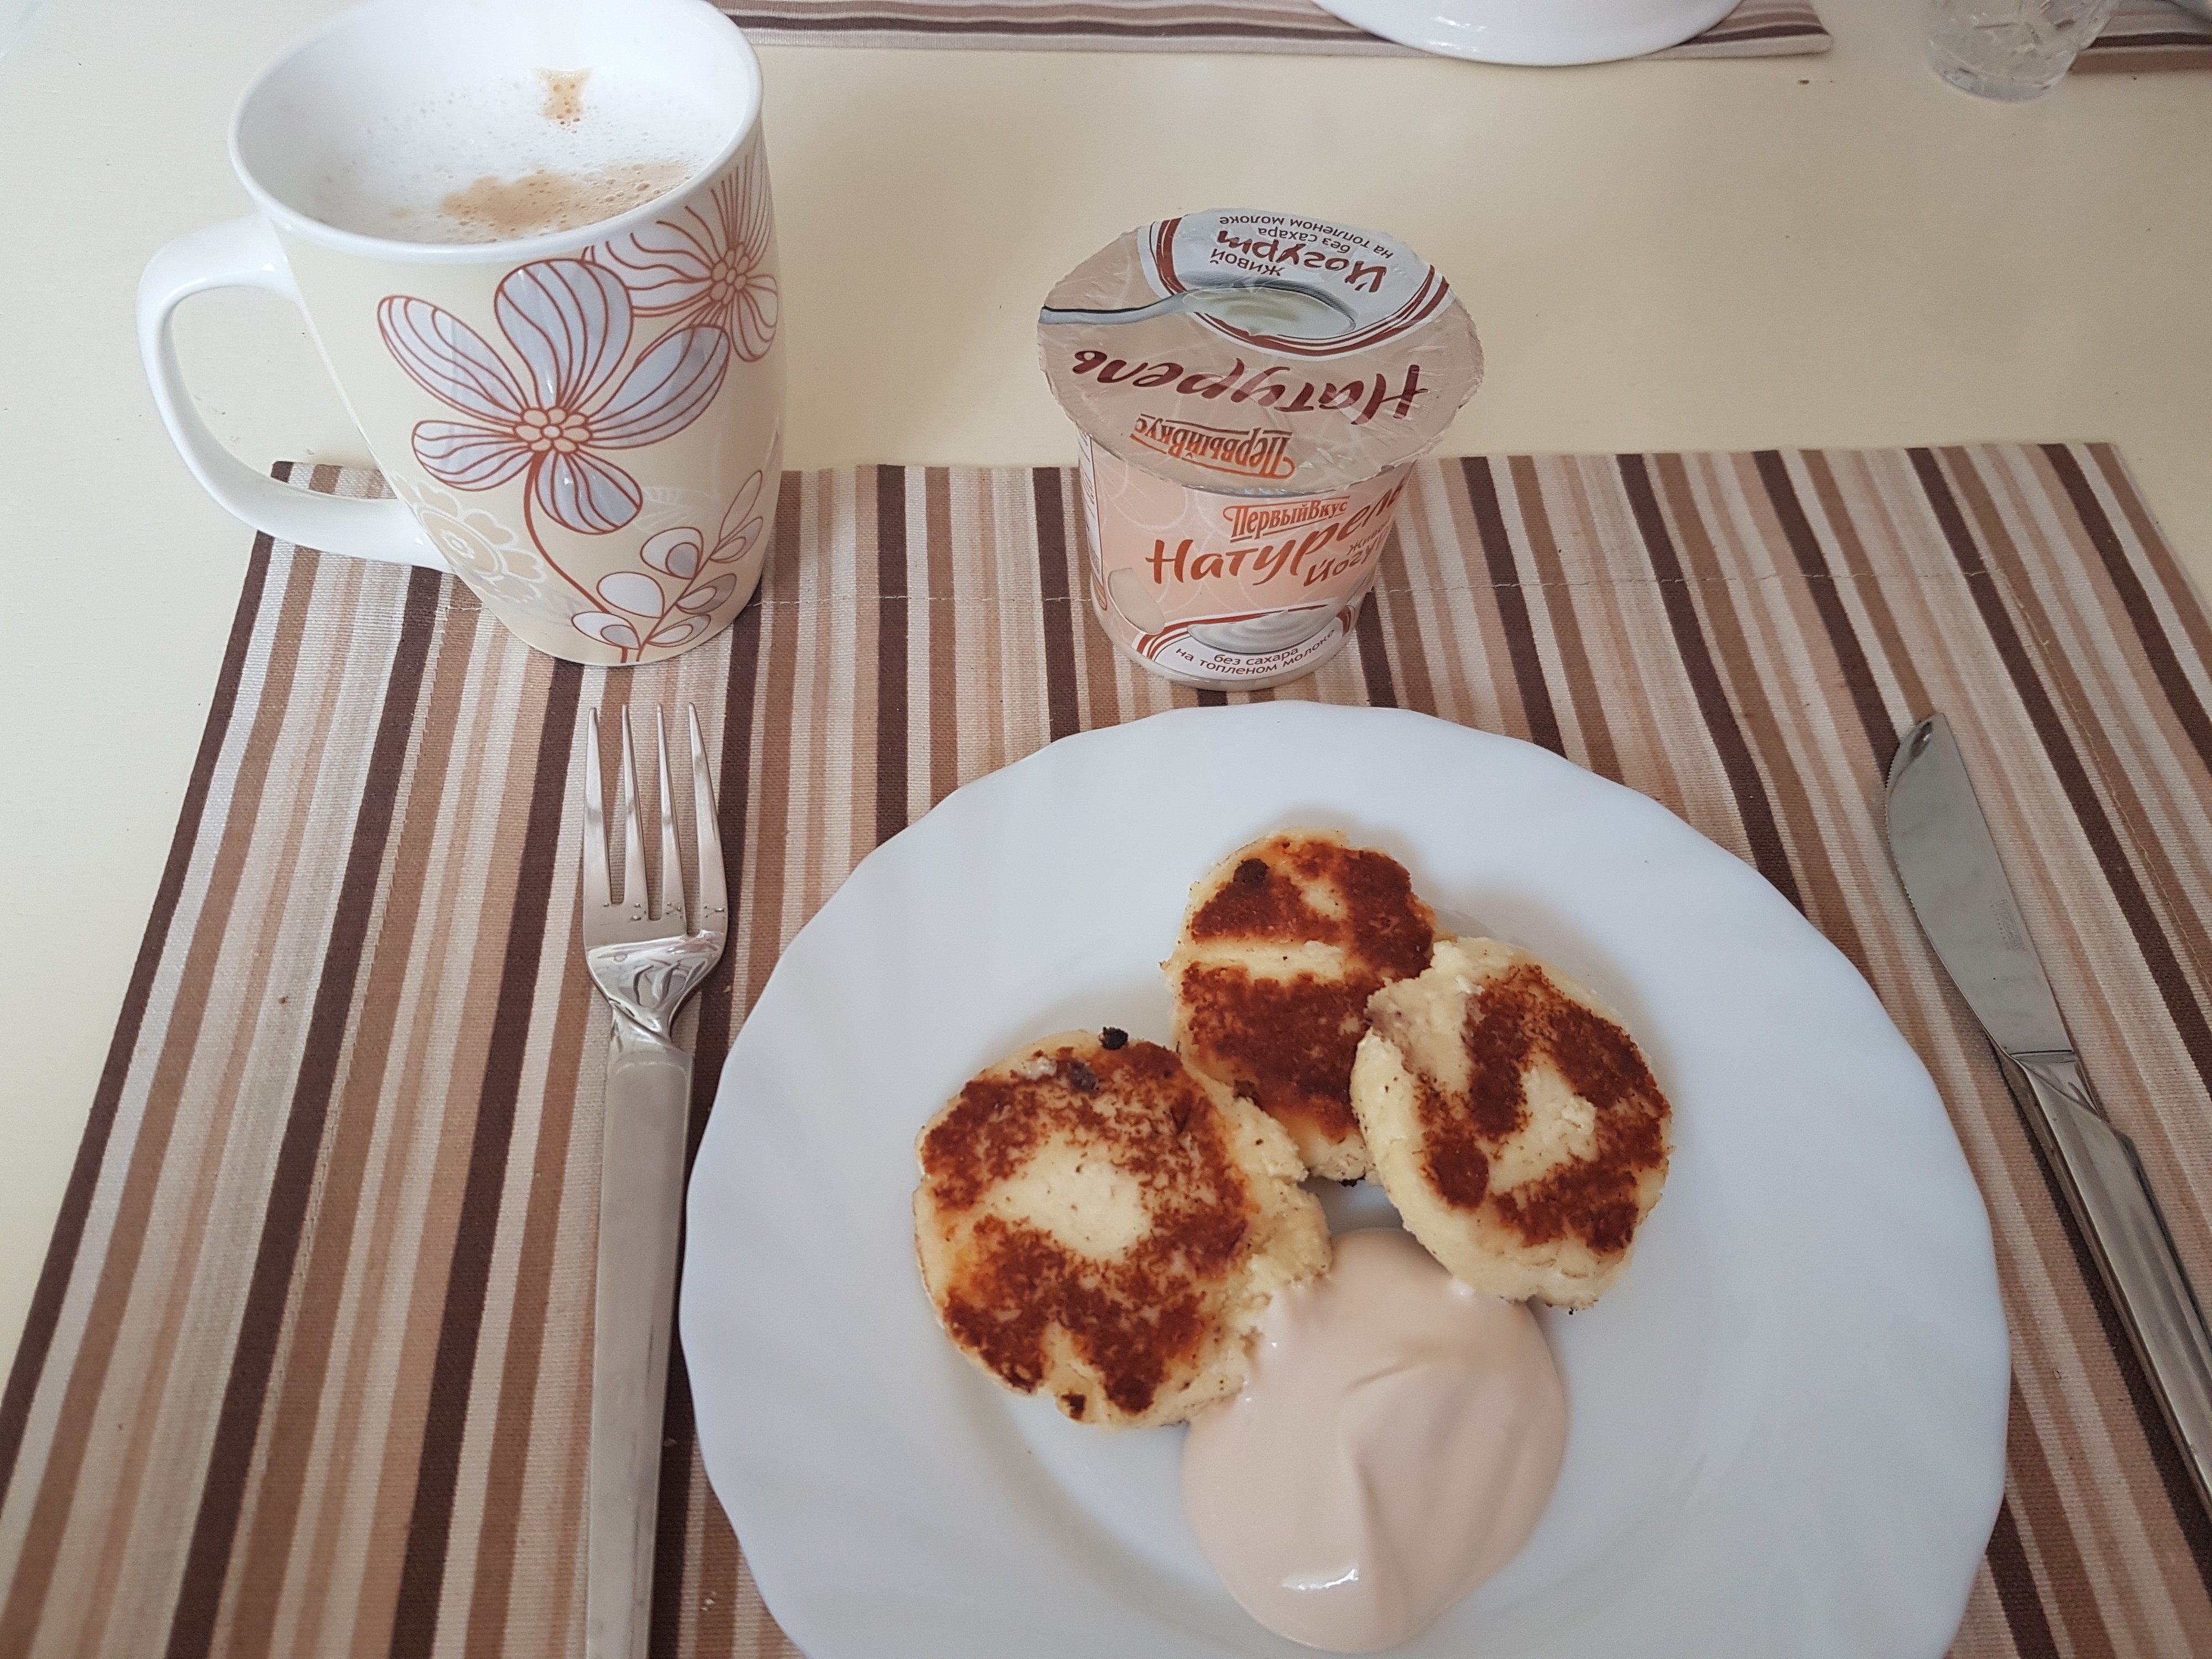 завтрак сырники с кофе фото